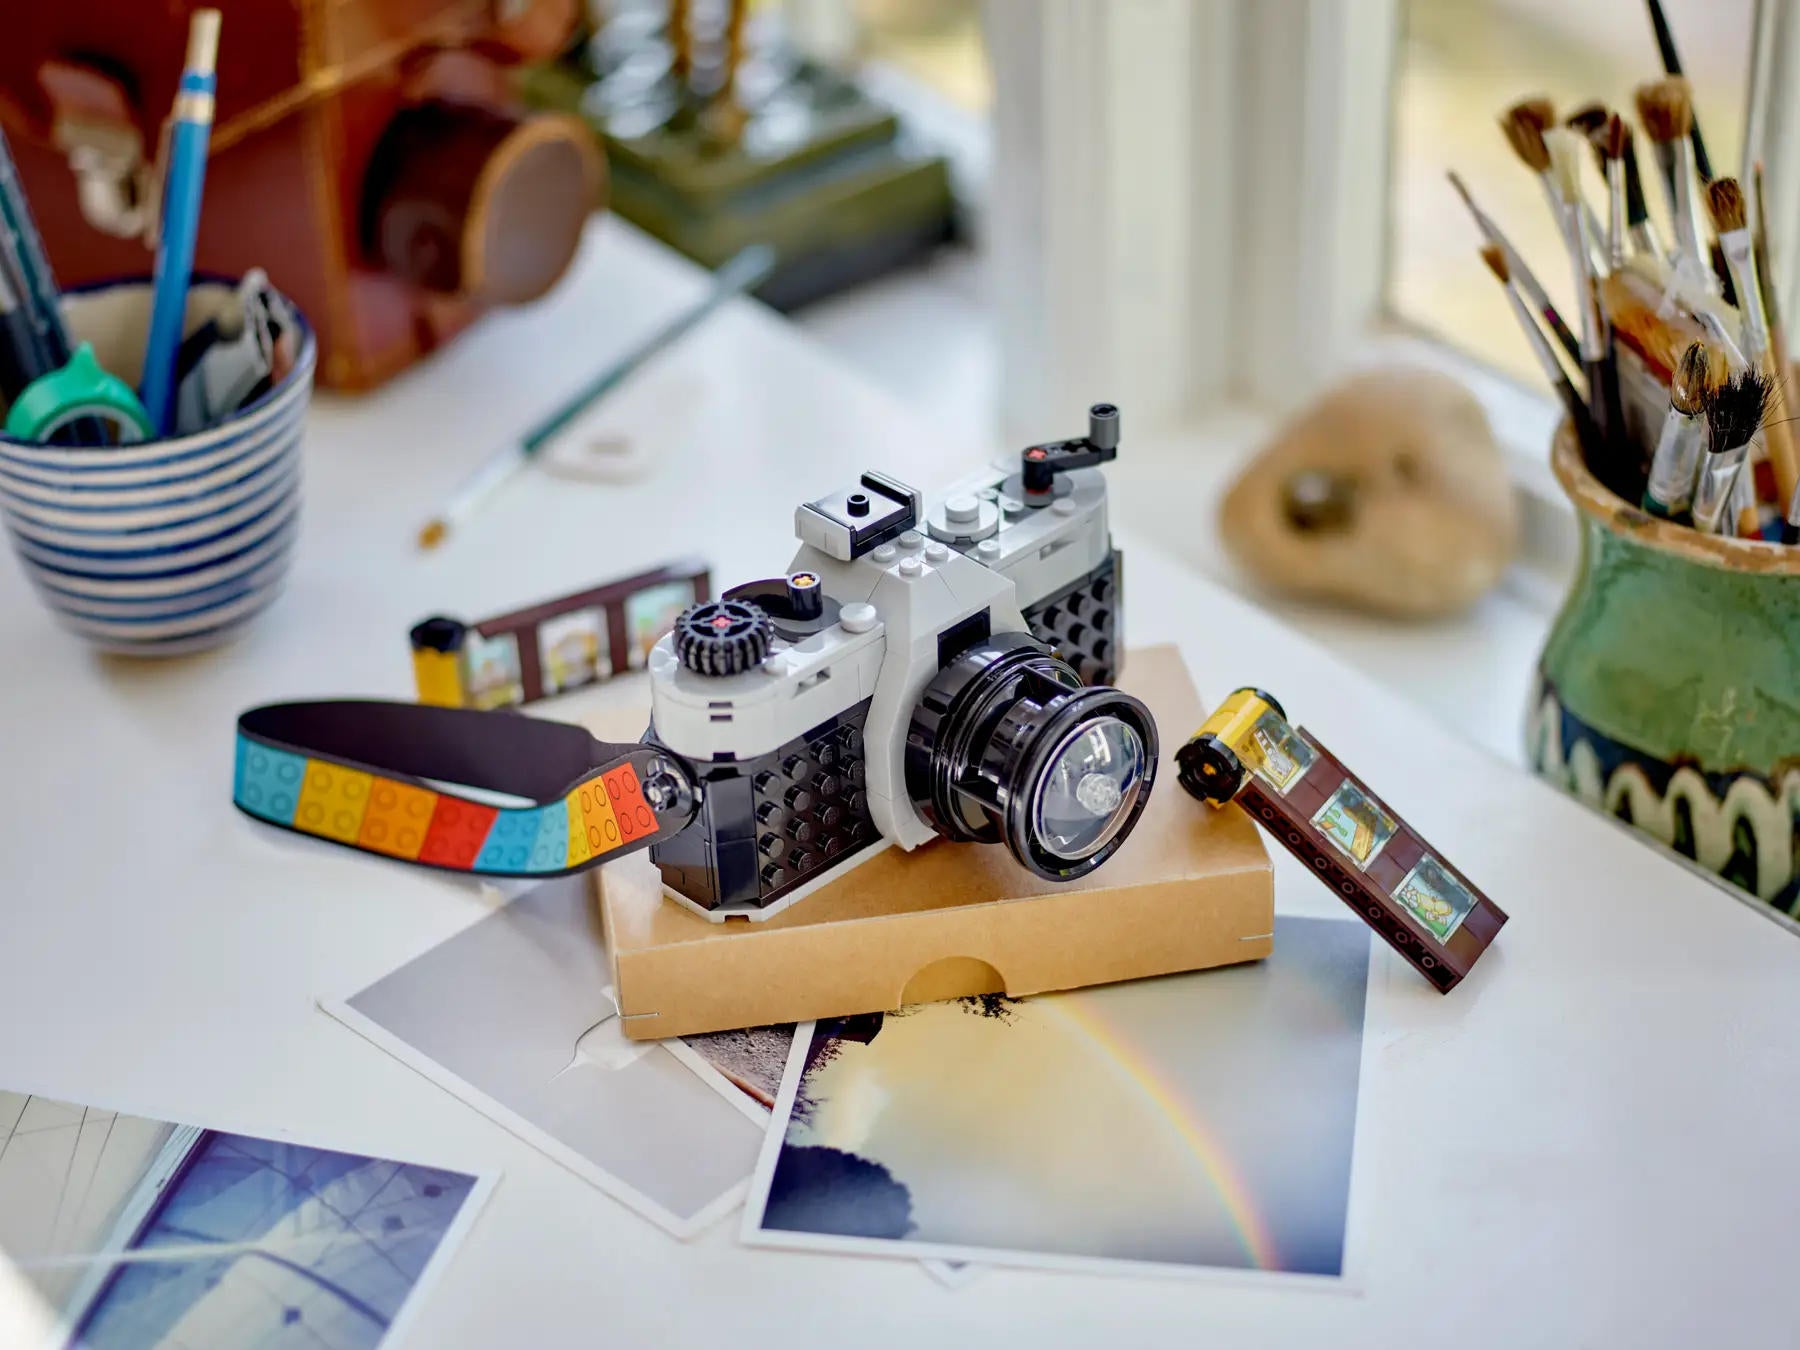 LEGO Ideas reveals their next set as 21345 Polaroid OneStep SX-70